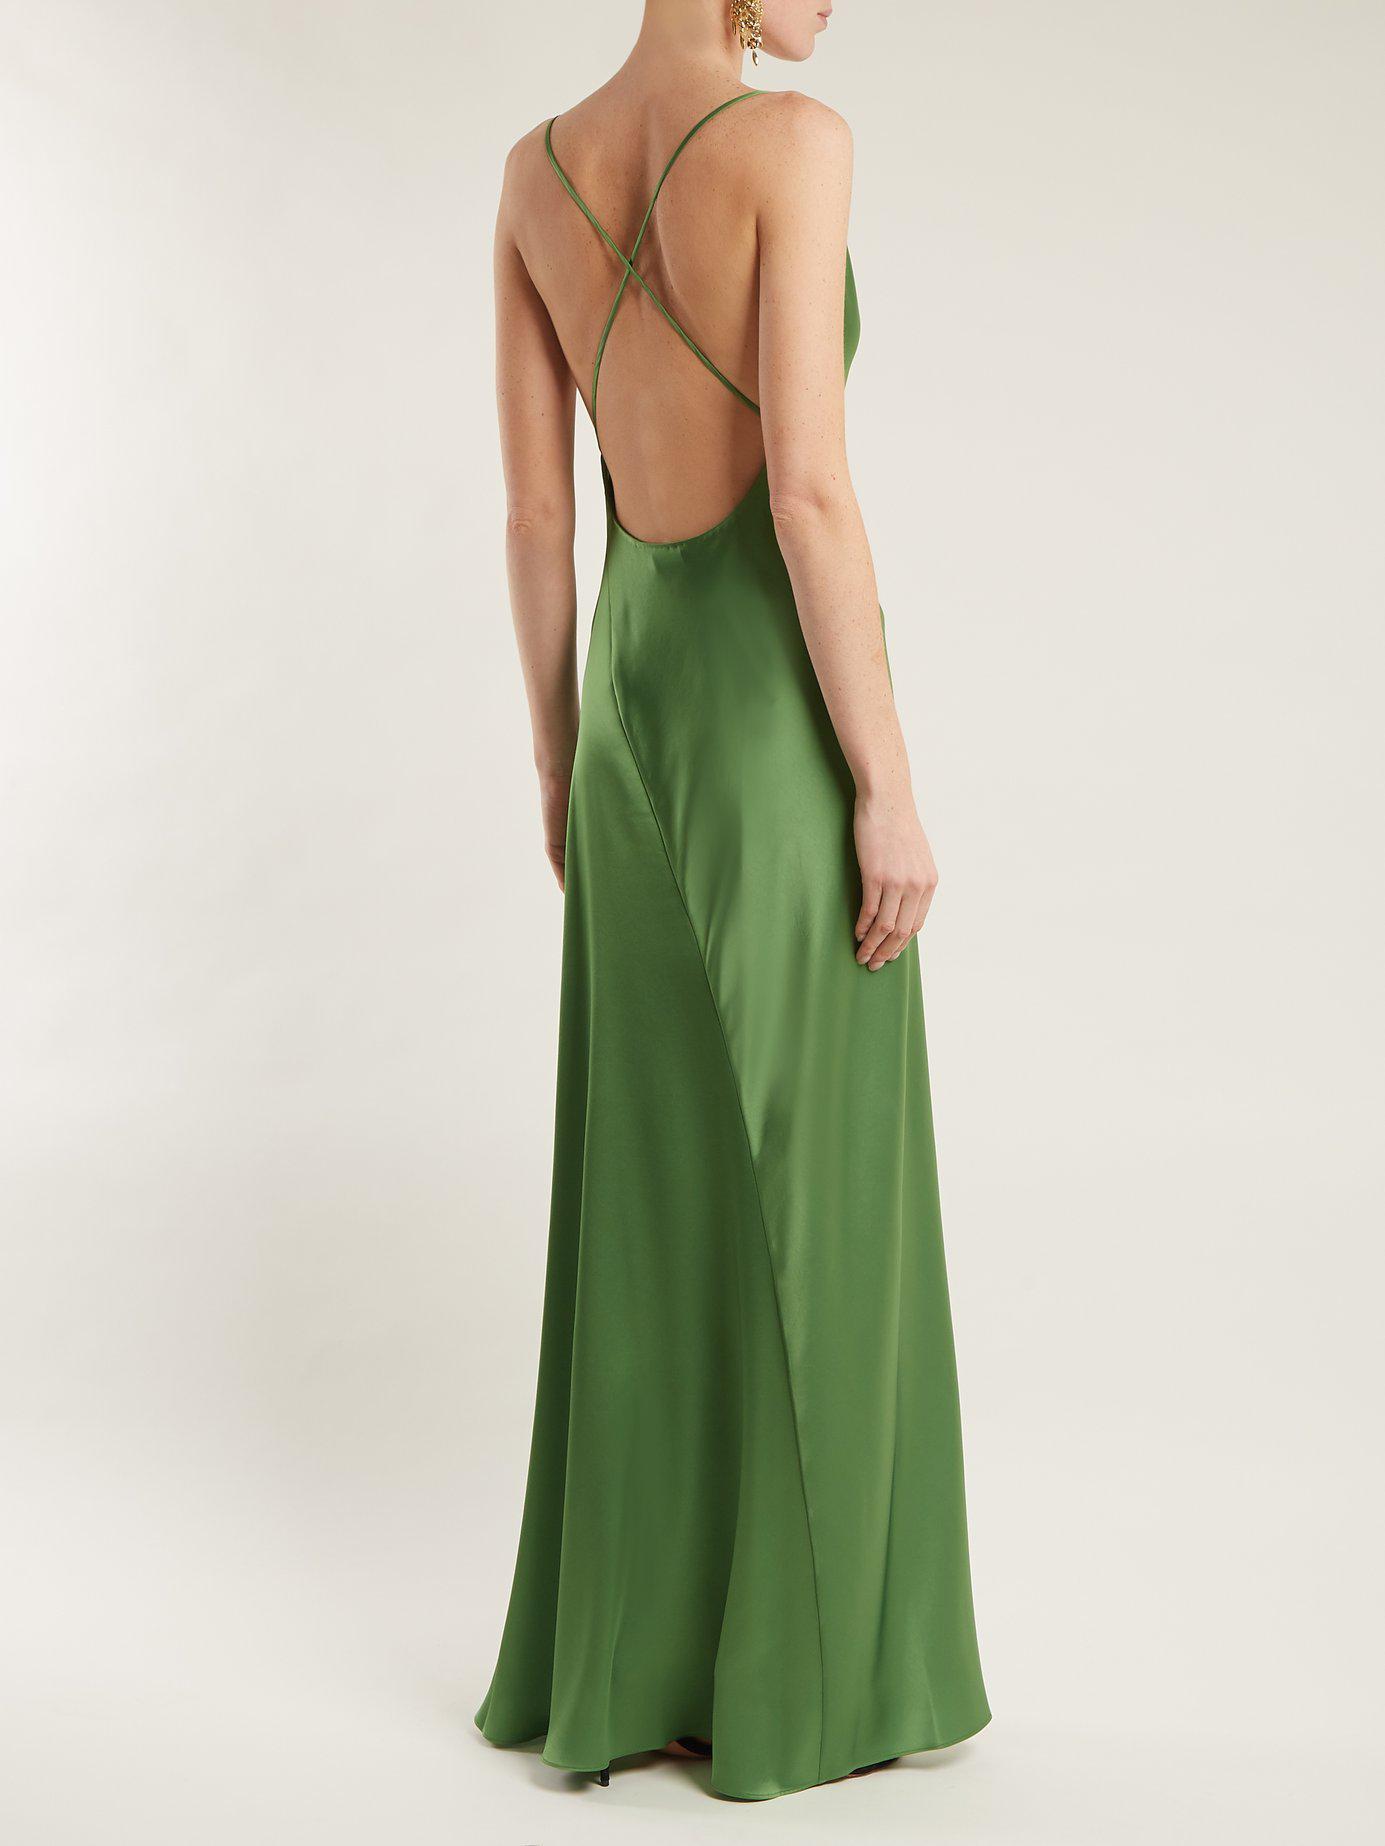 Diane von Furstenberg Bias-cut Satin Gown in Green | Lyst